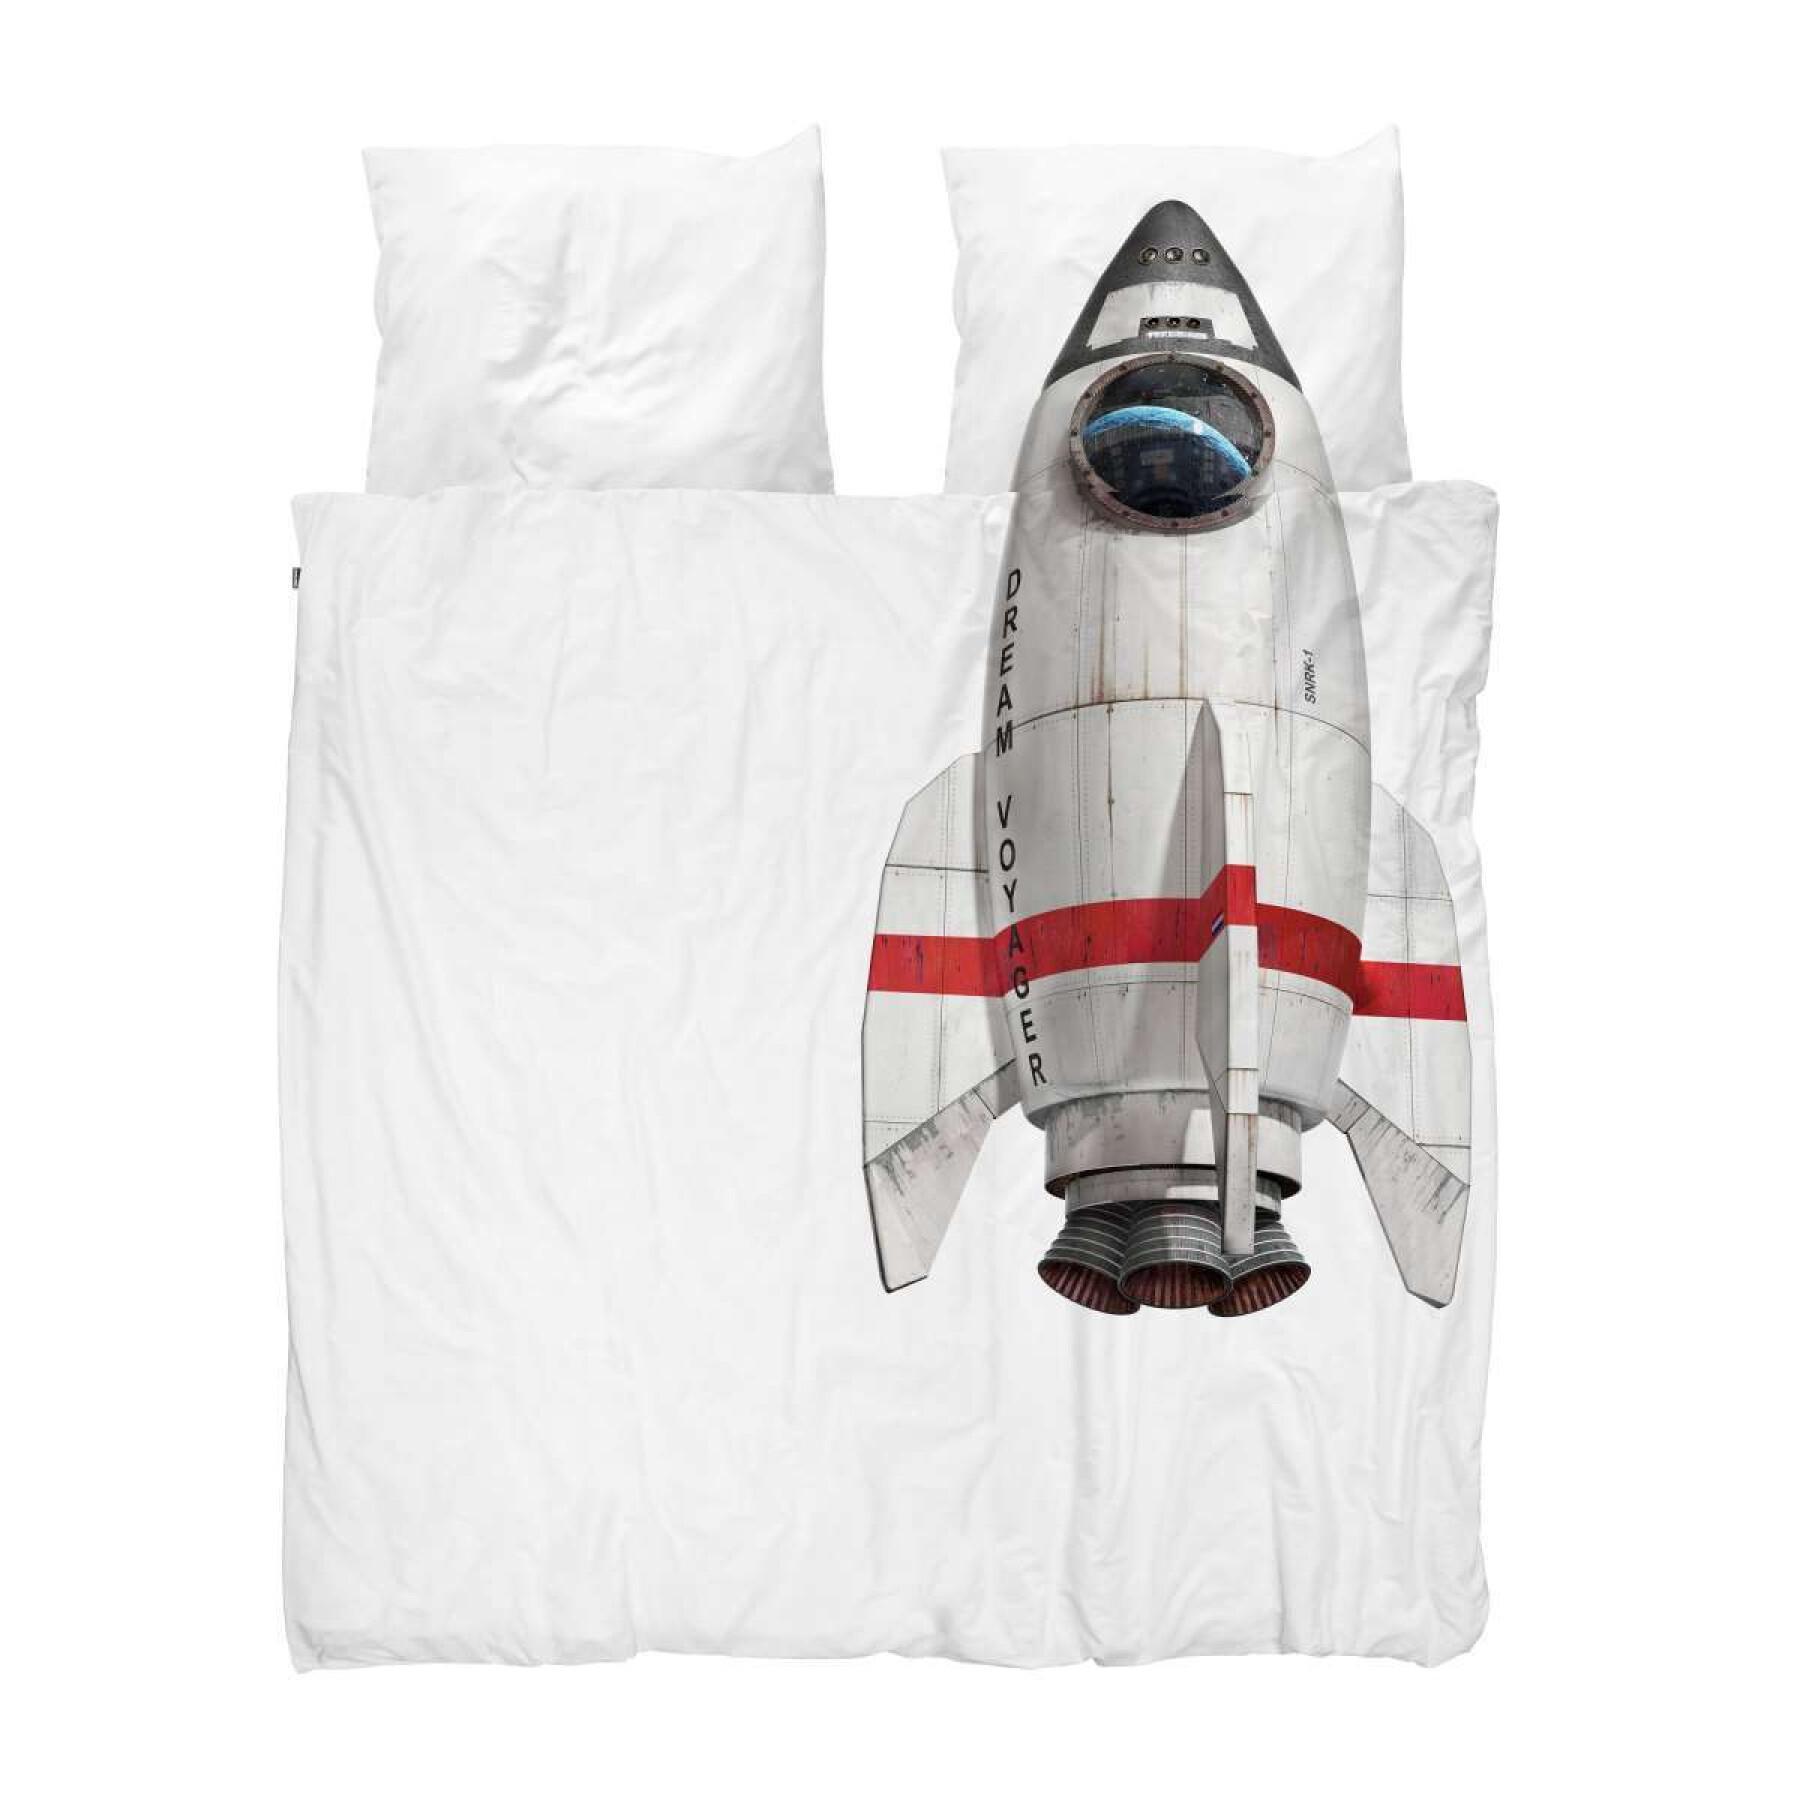 Poszewka na kołdrę i poduszkę dla dzieci Snurk Rocket